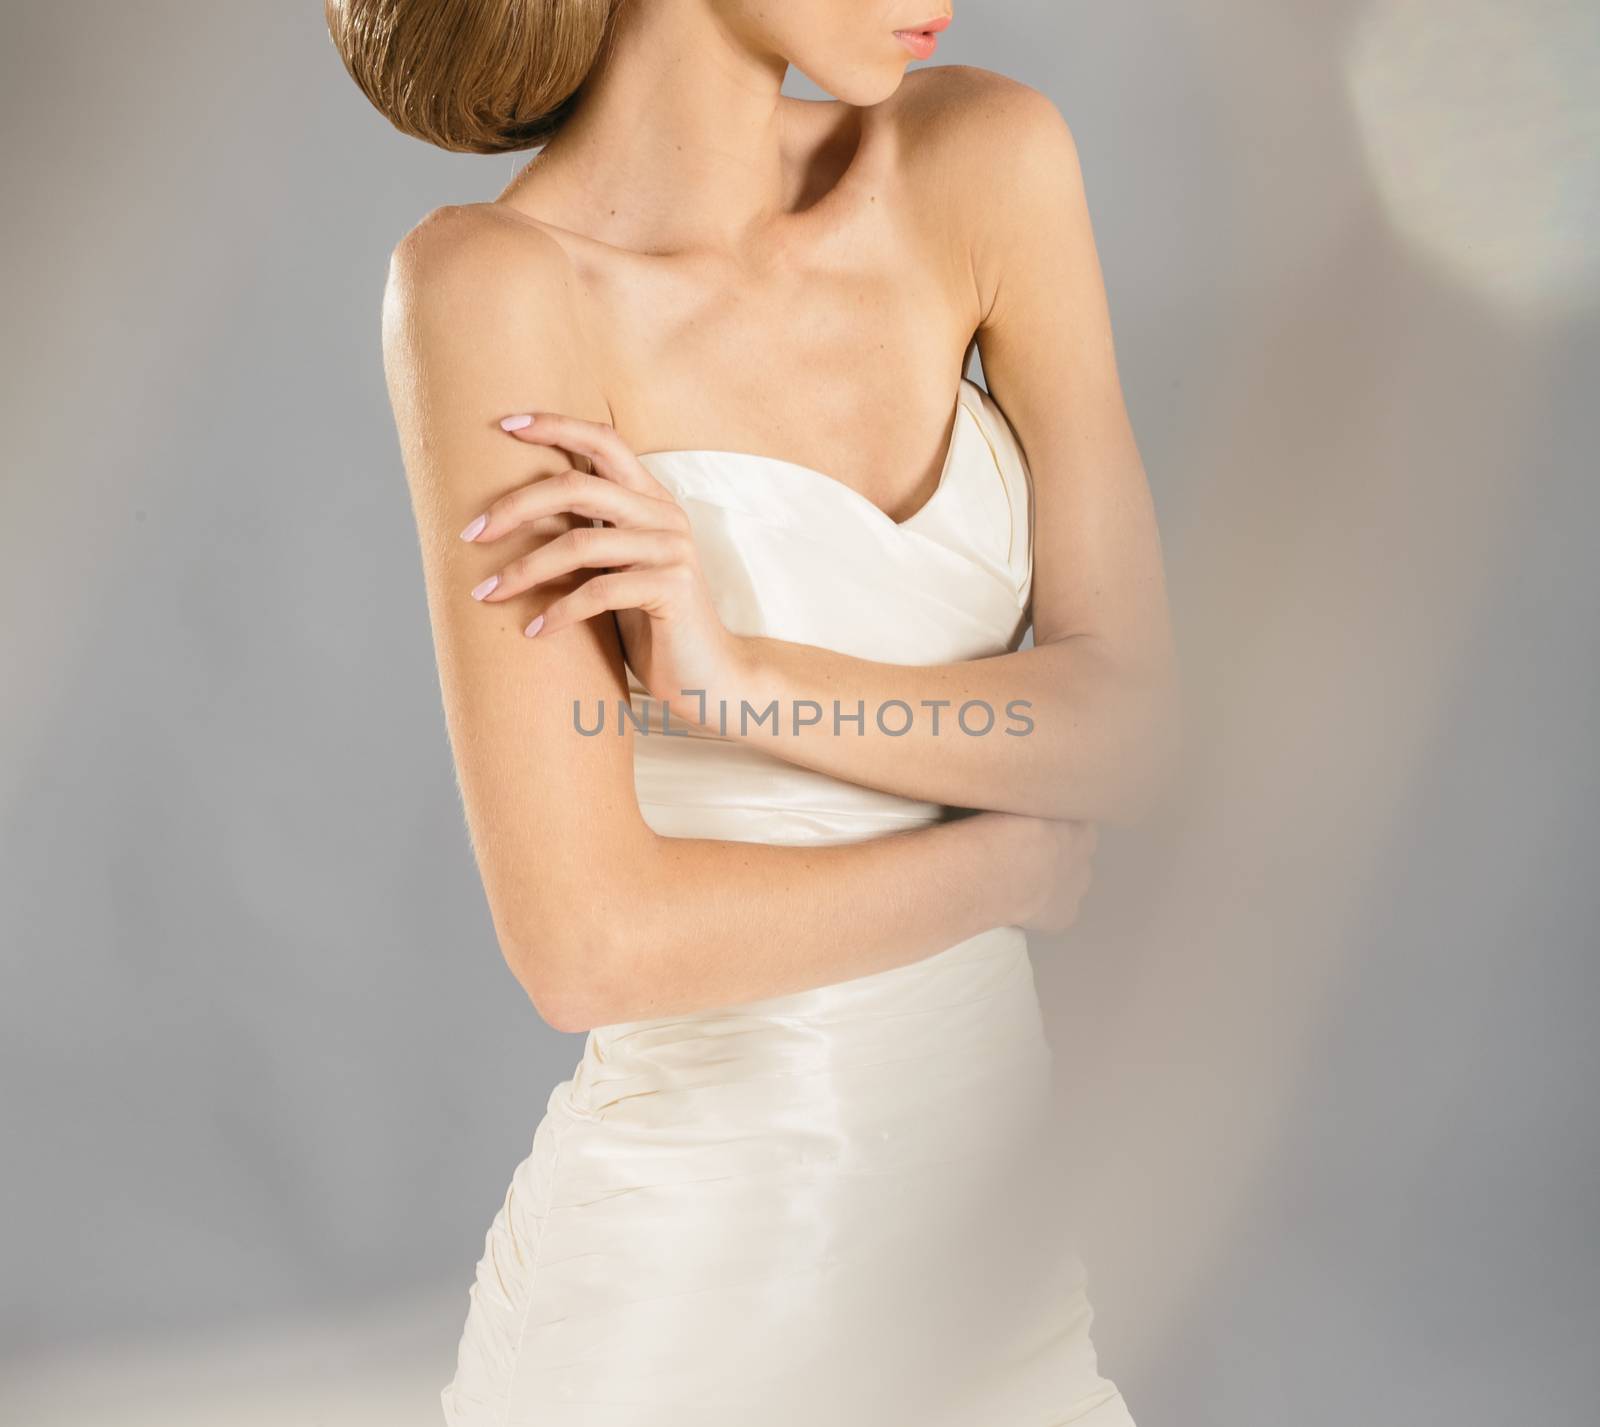 Beautiful bride by sarymsakov